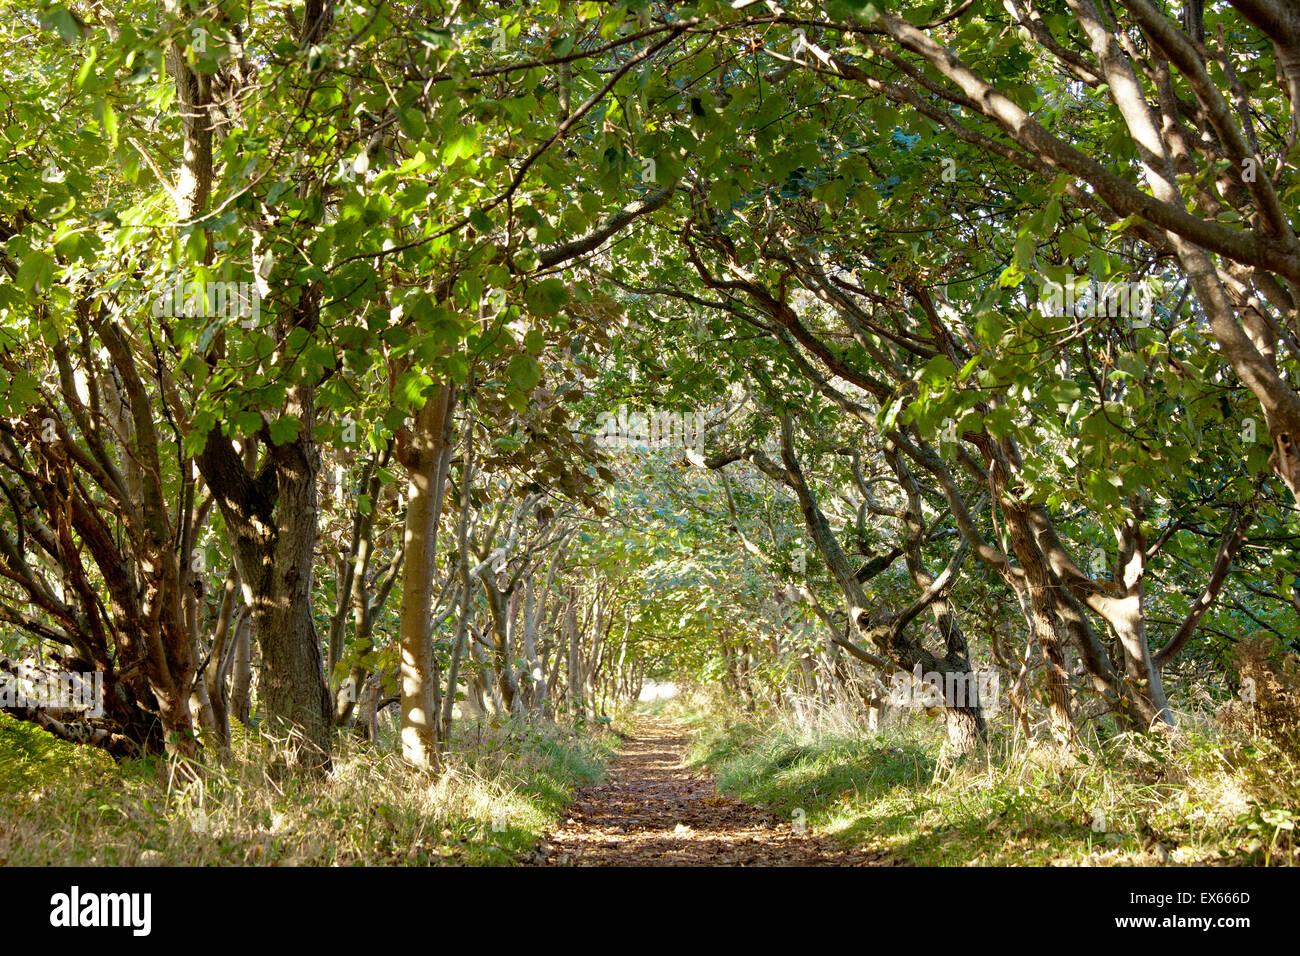 Europa, Niederlande, Zeeland, Waldweg an der Natur reservieren de Manteling  in der Nähe von Domburg auf der Halbinsel Walcheren Stockfotografie - Alamy